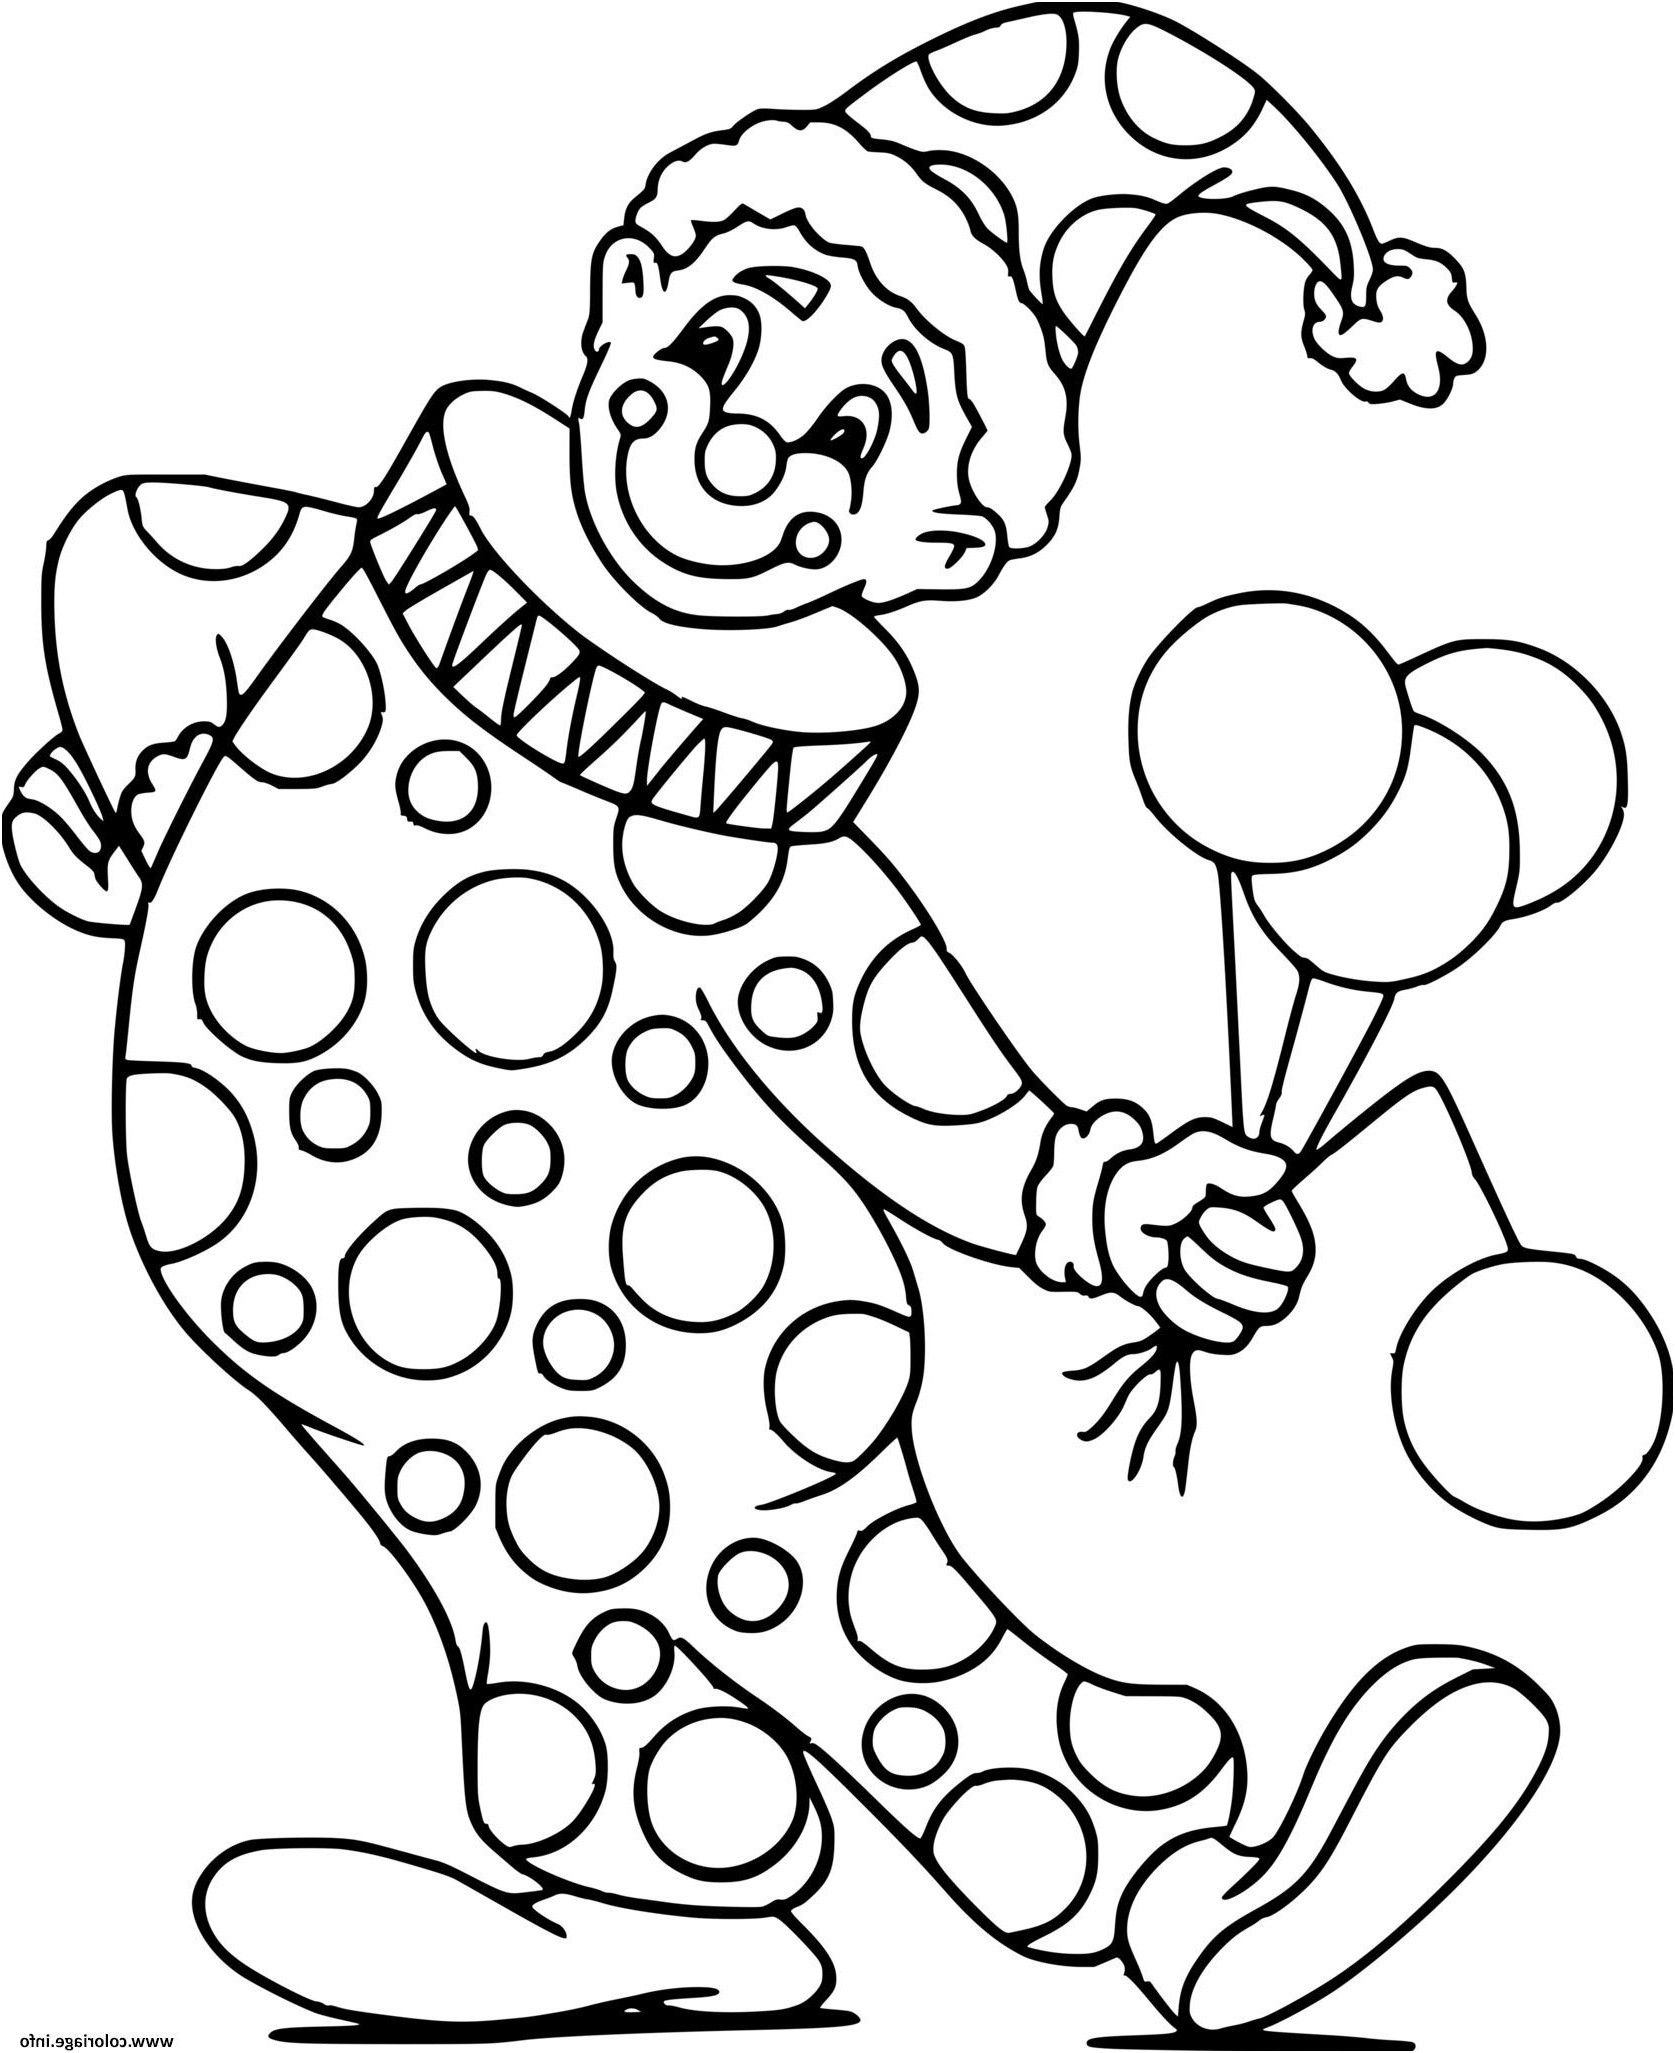 clown avec son deguisement et des ballons de celebration coloriage dessin